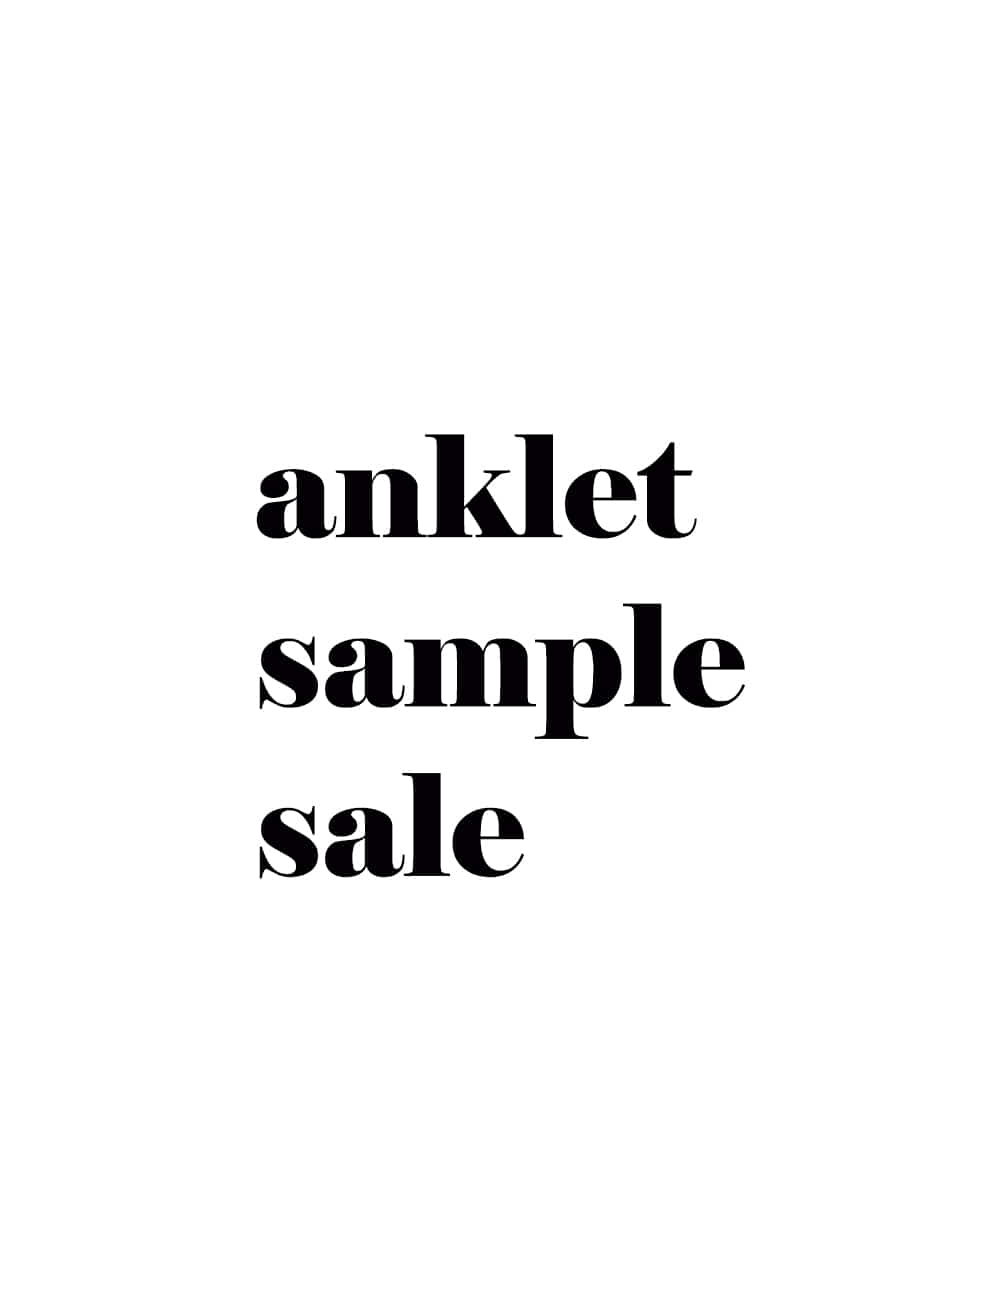 발찌 샘플 세일 anklet sample sale